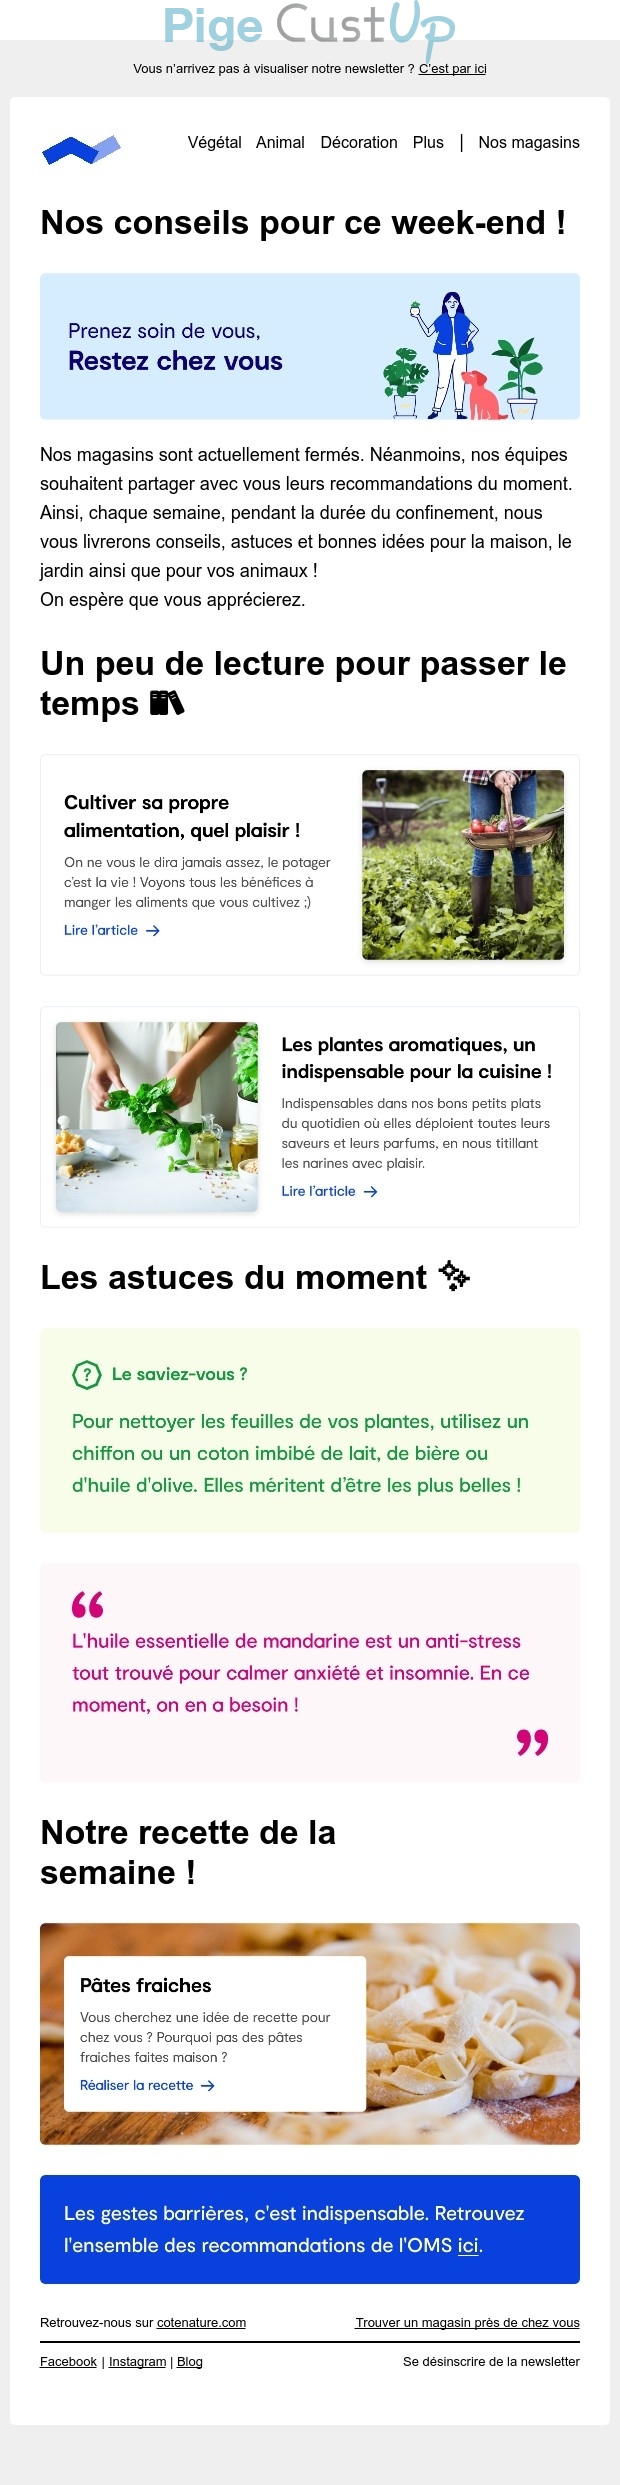 Exemple de Type de media  e-mailing - Côté Nature - Marketing relationnel - Newsletter